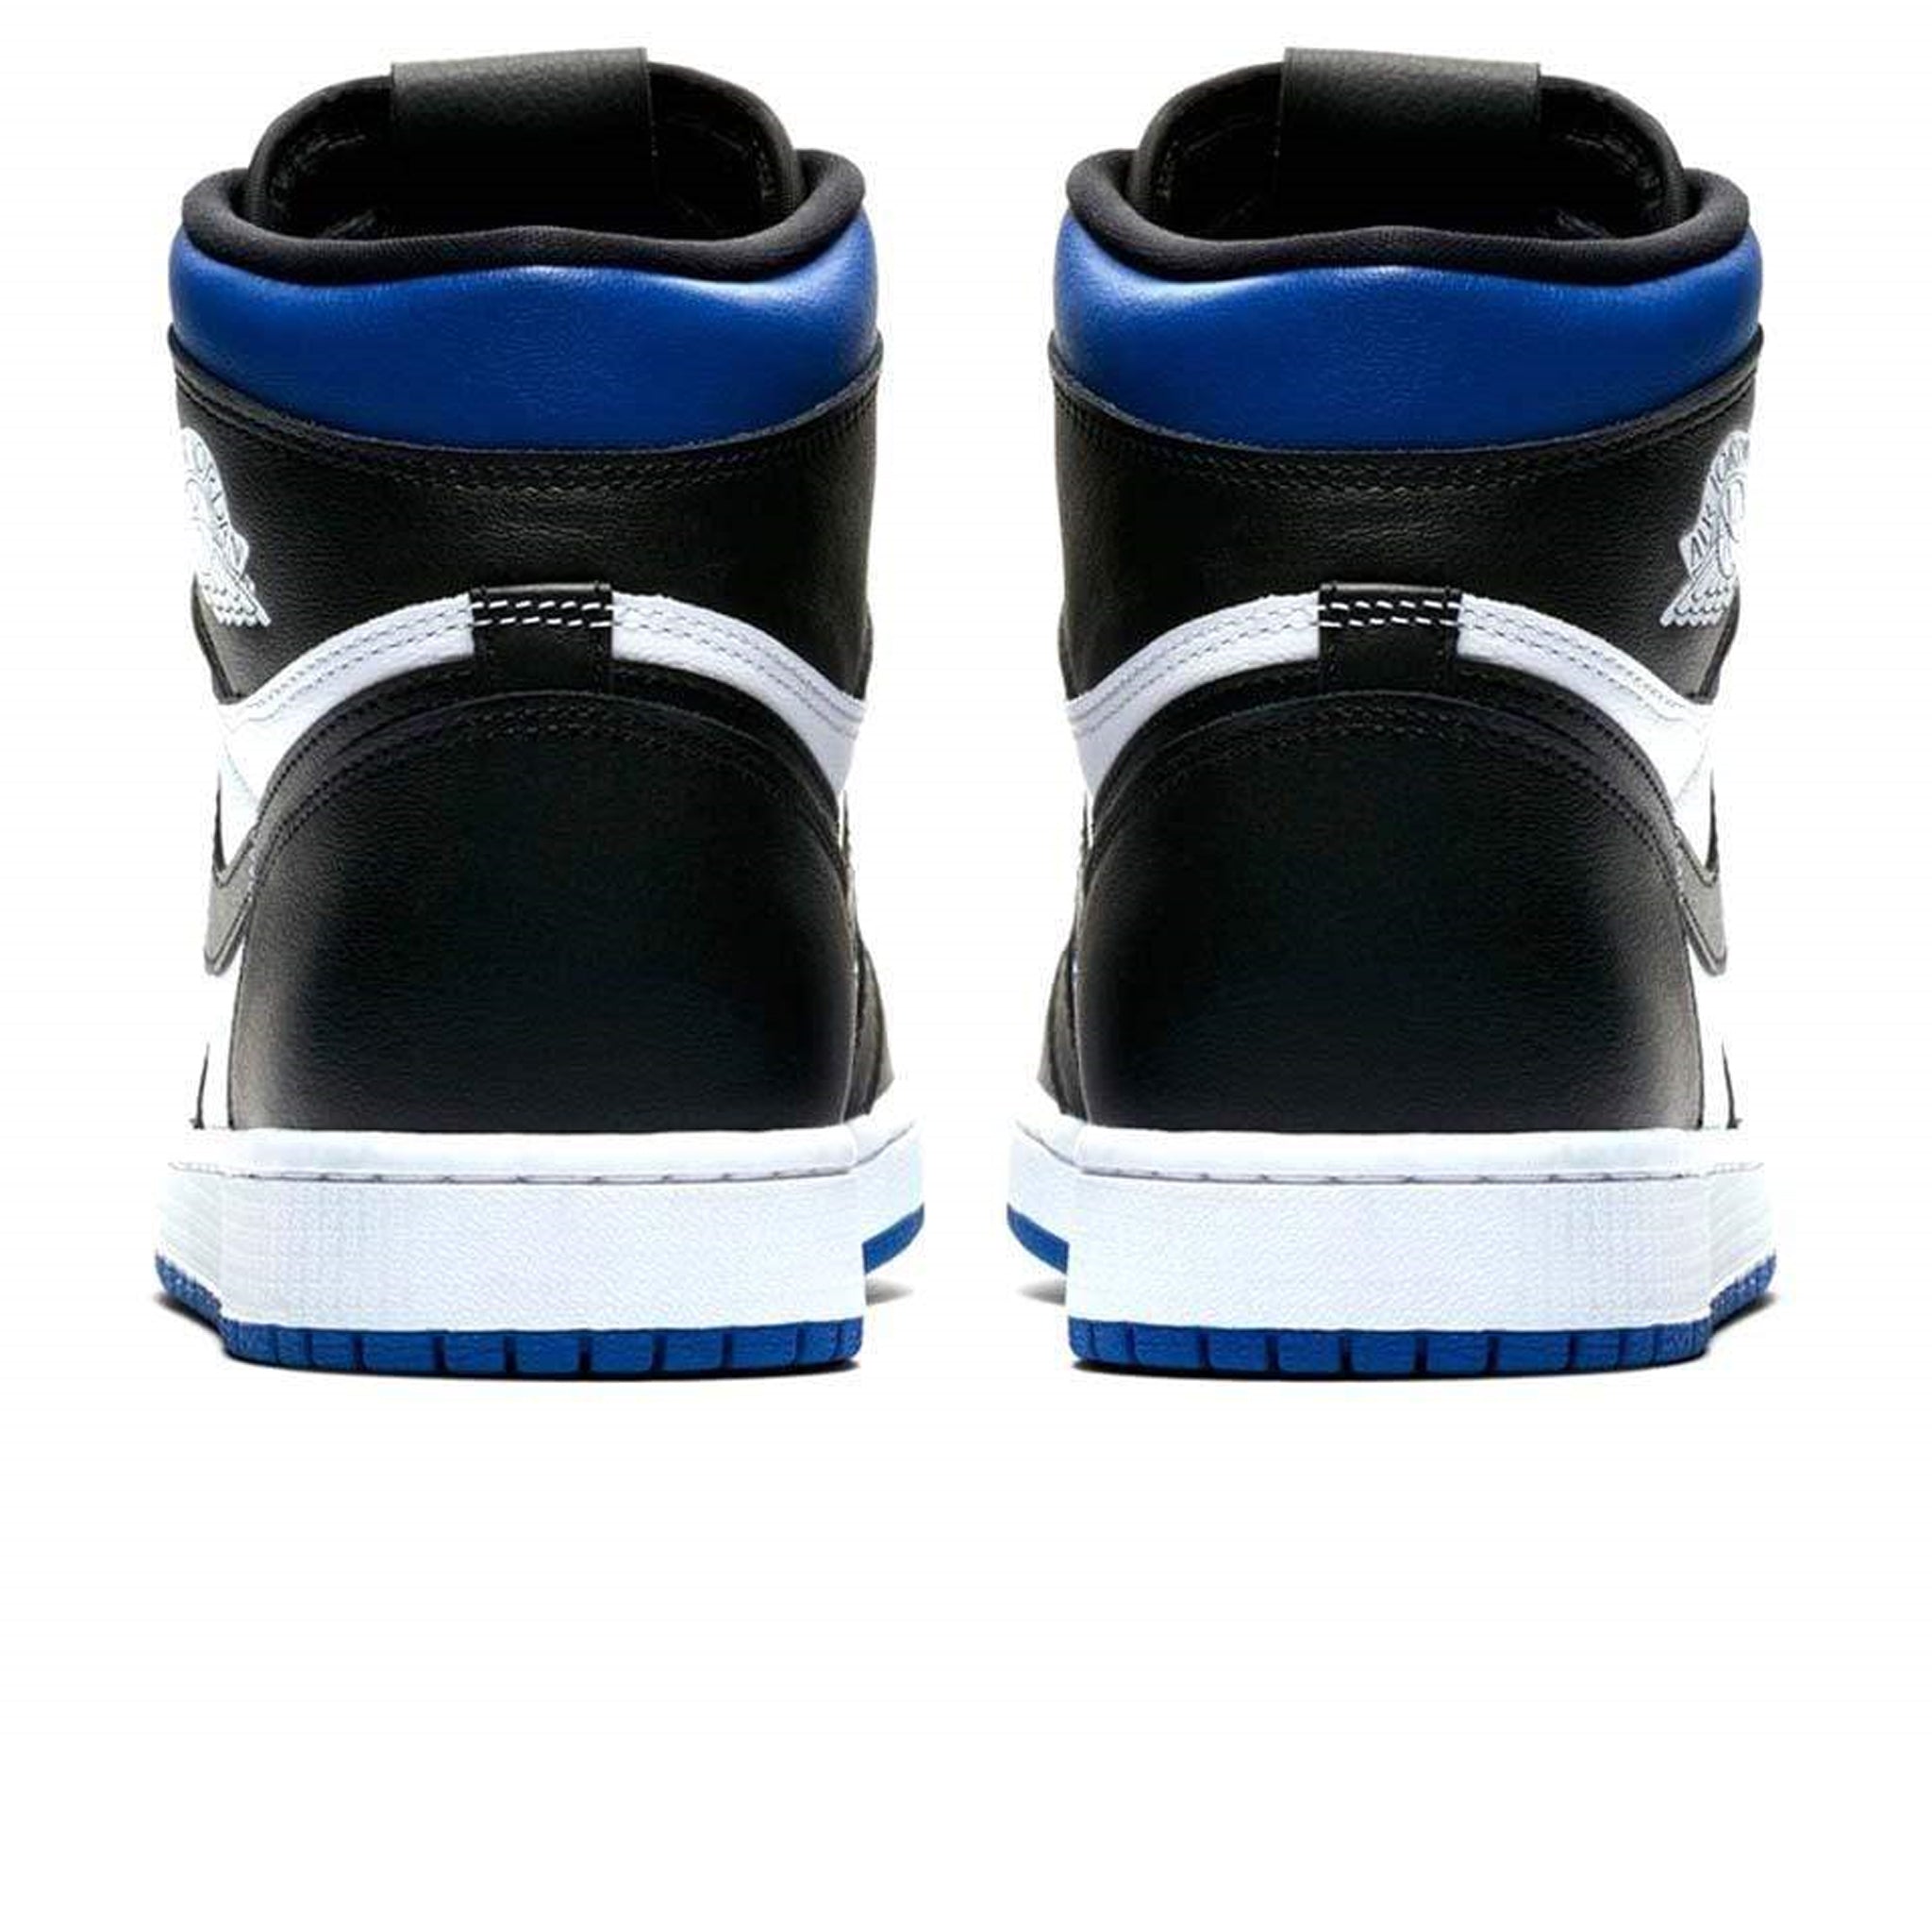 Heel view of Air Jordan 1 Royal Toe Sneaker 555088-041